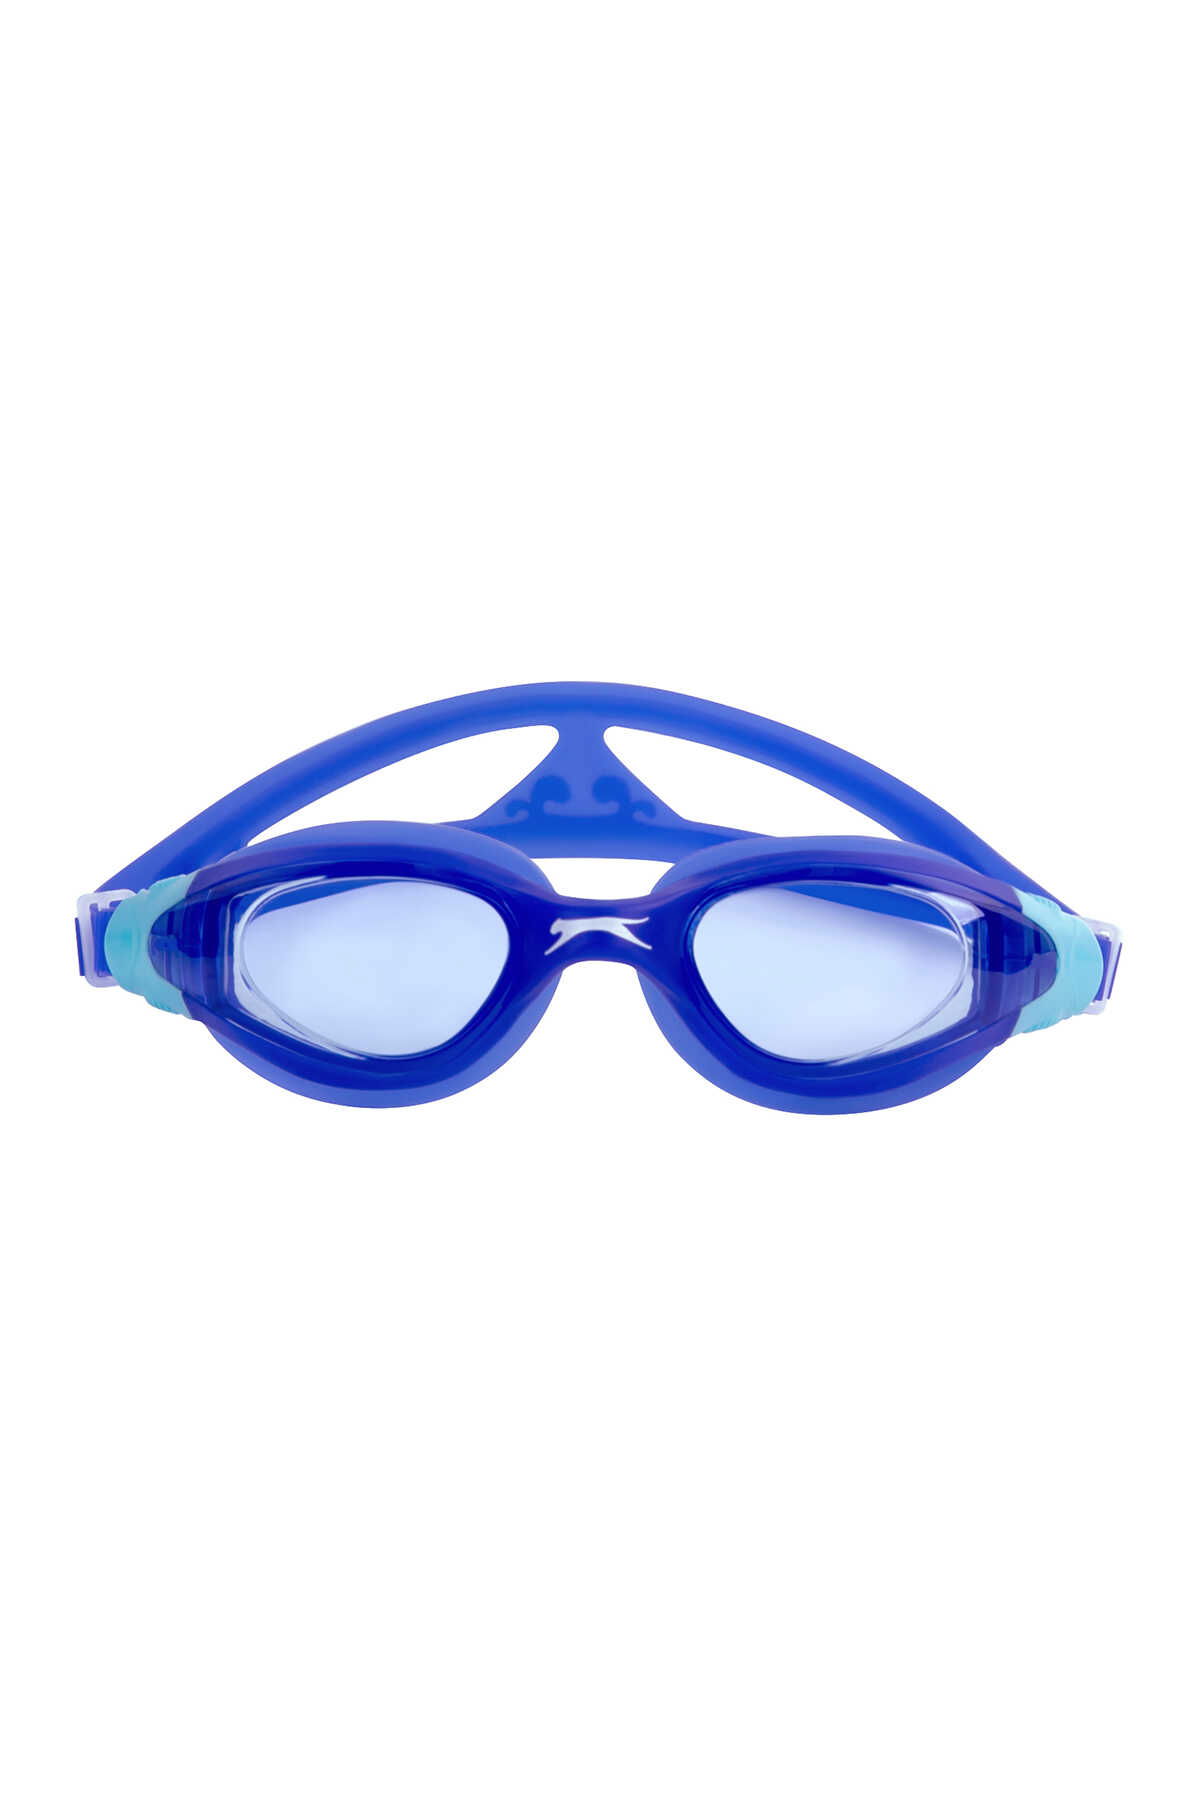 Slazenger - Slazenger Aero GS16 Unisex Çocuk Yüzücü Gözlüğü Mavi